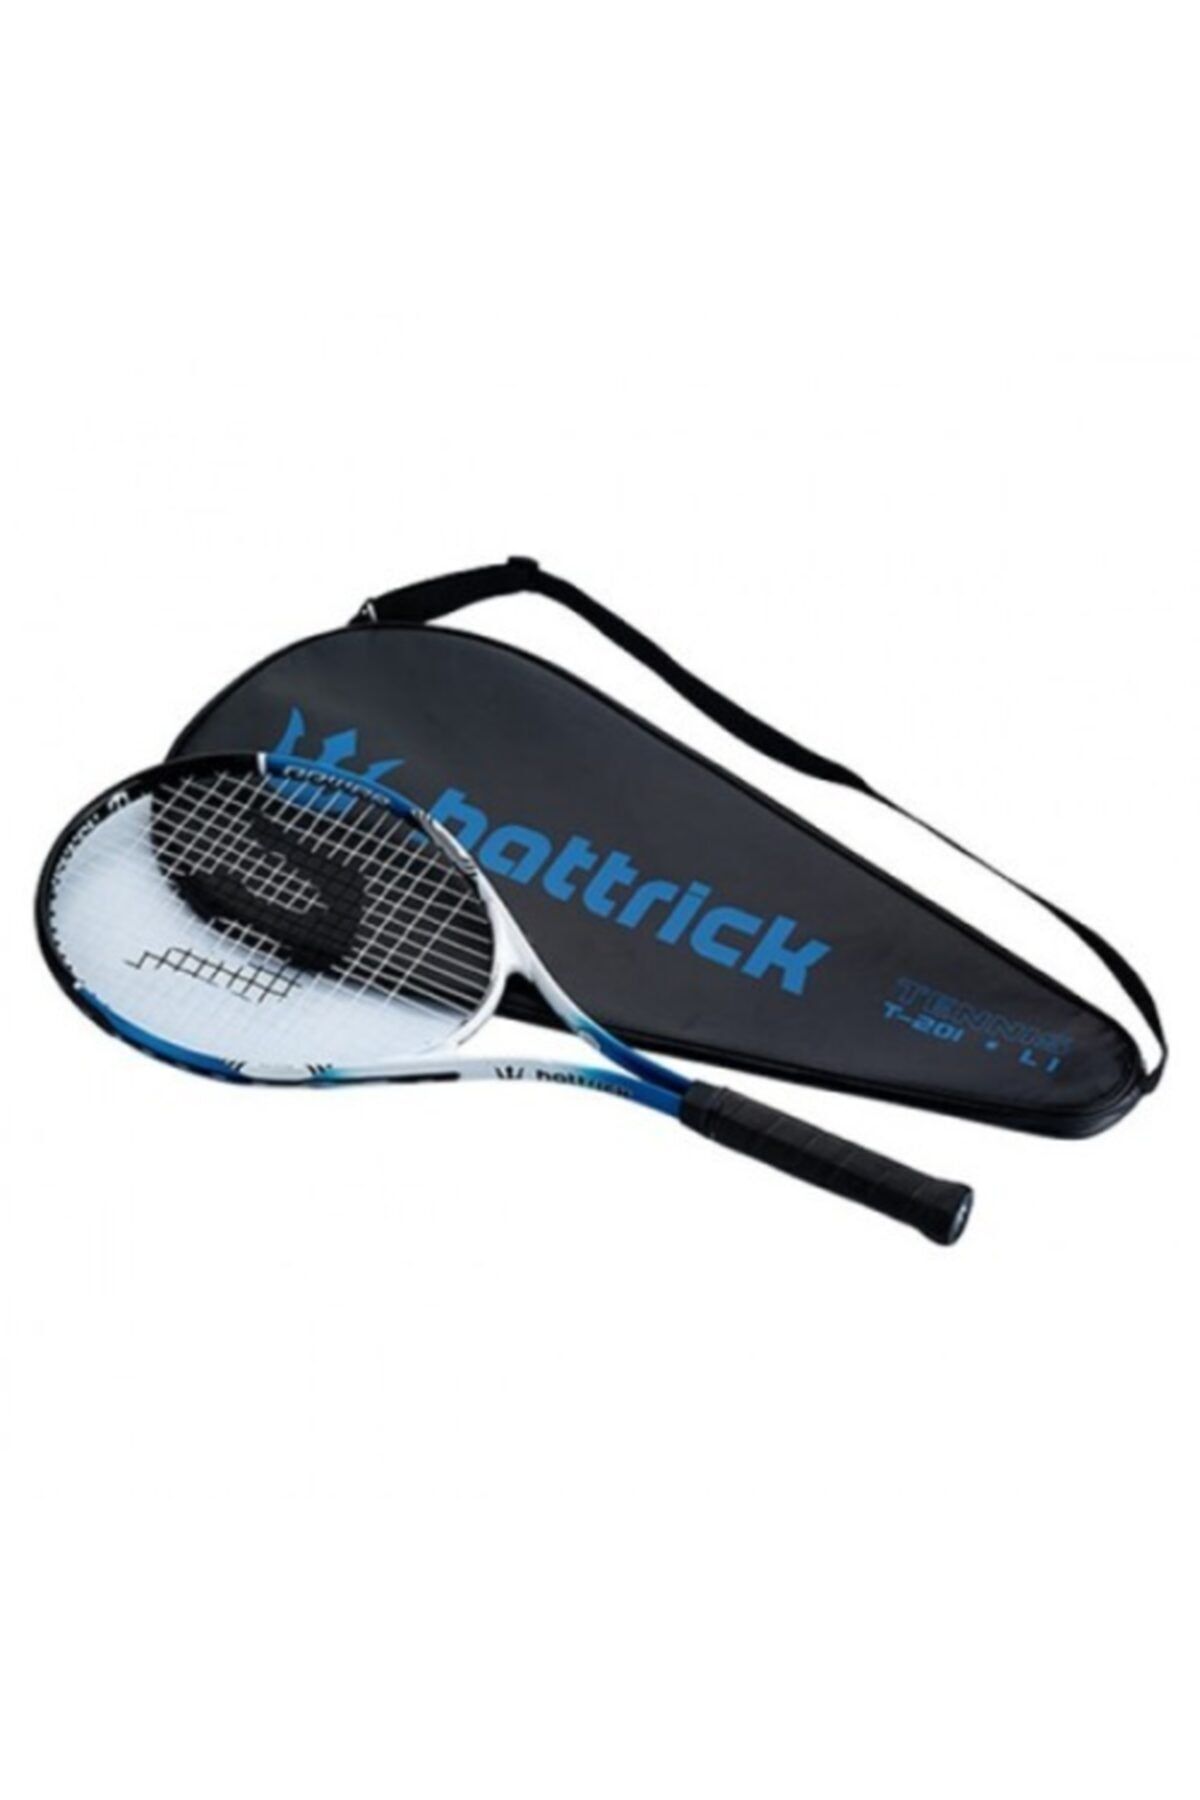 Hattrick T201 Mavi Tenis Raketi